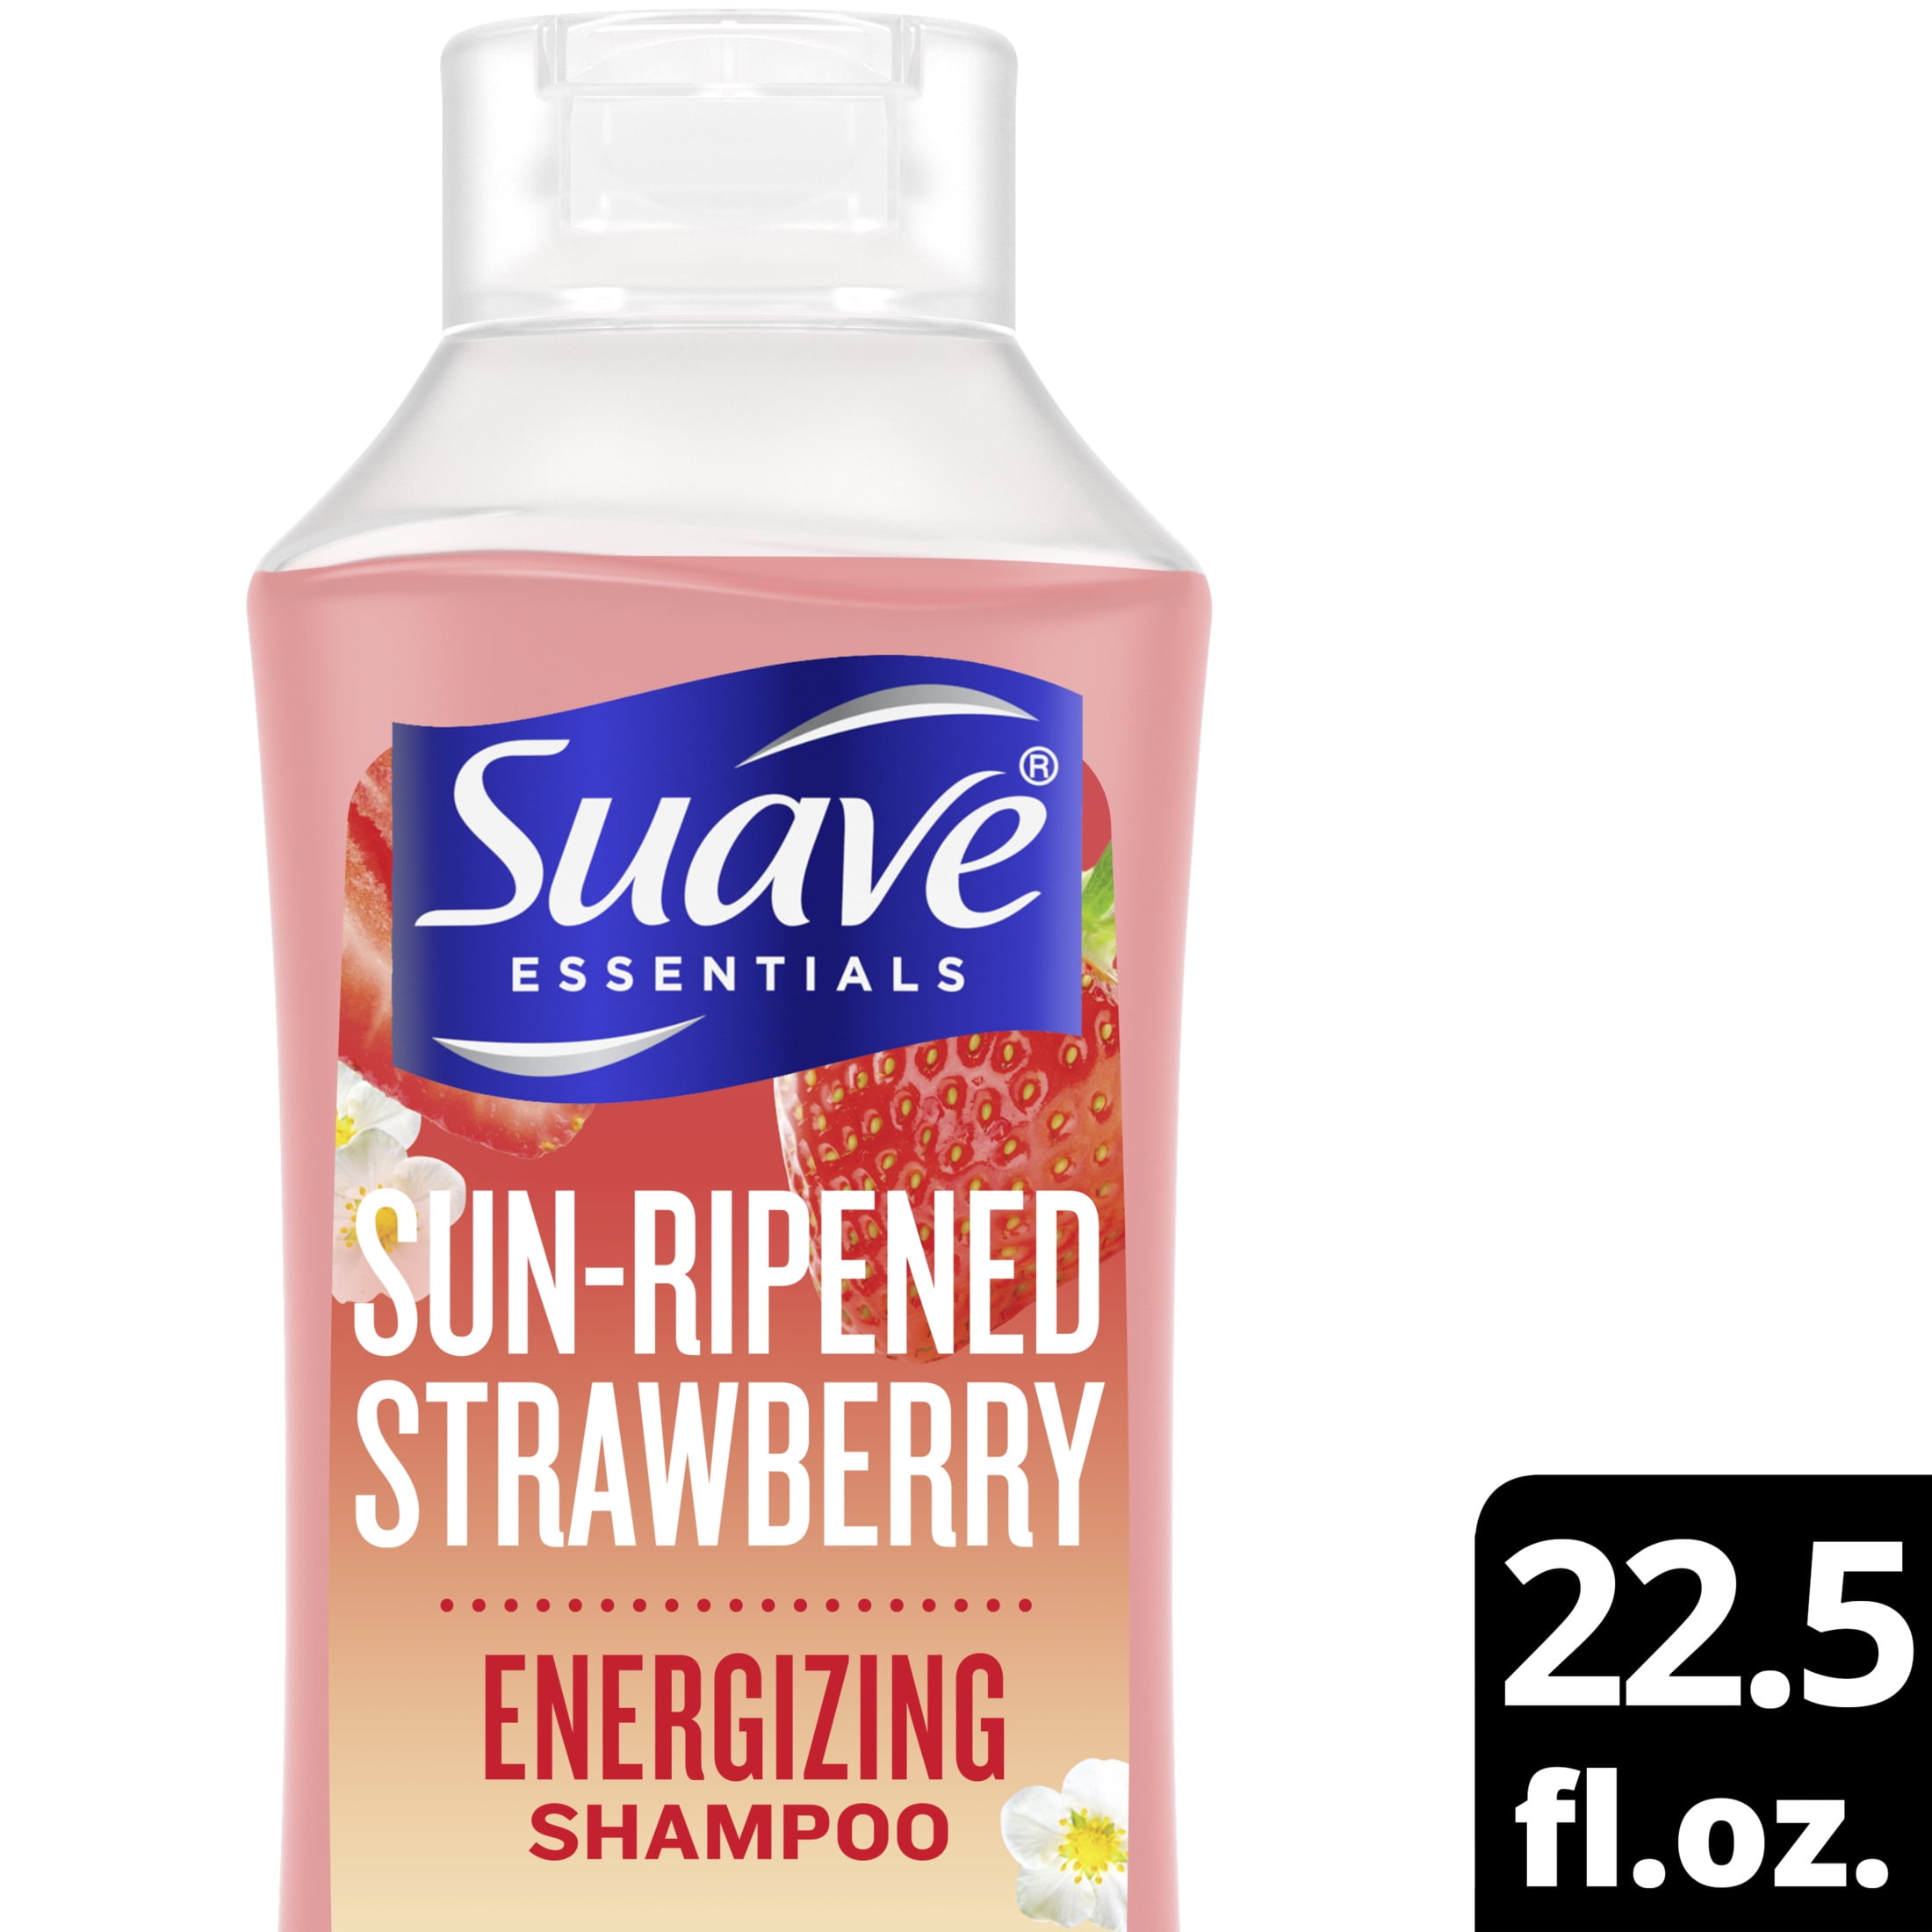 Suave Sun-Ripened Strawberry Energizing Shampoo 22.5 fl oz